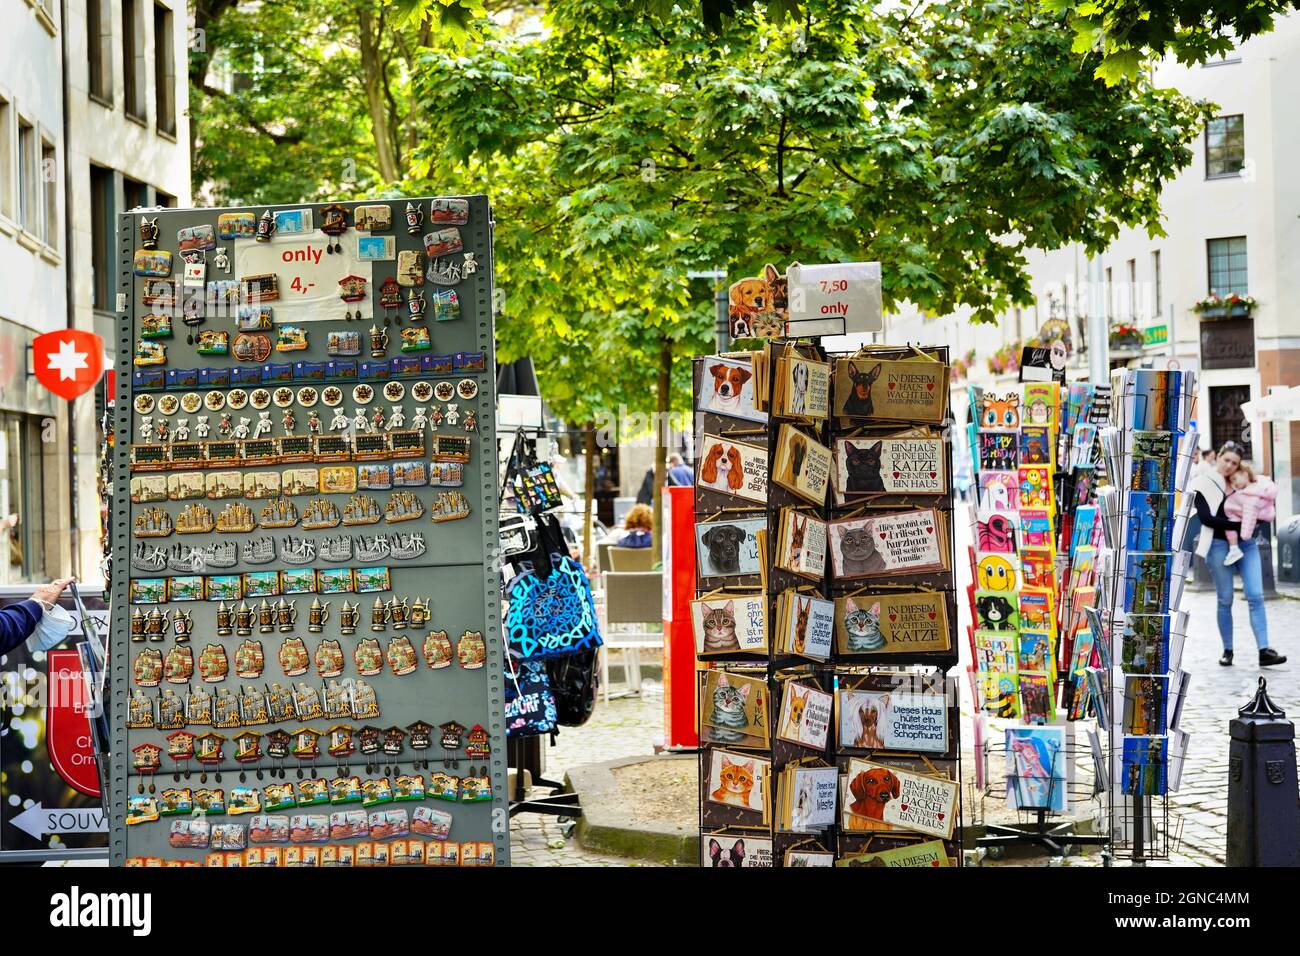 Colorati stand da cartolina e souvenir nella popolare area turistica della città vecchia di Düsseldorf in Germania. Foto Stock